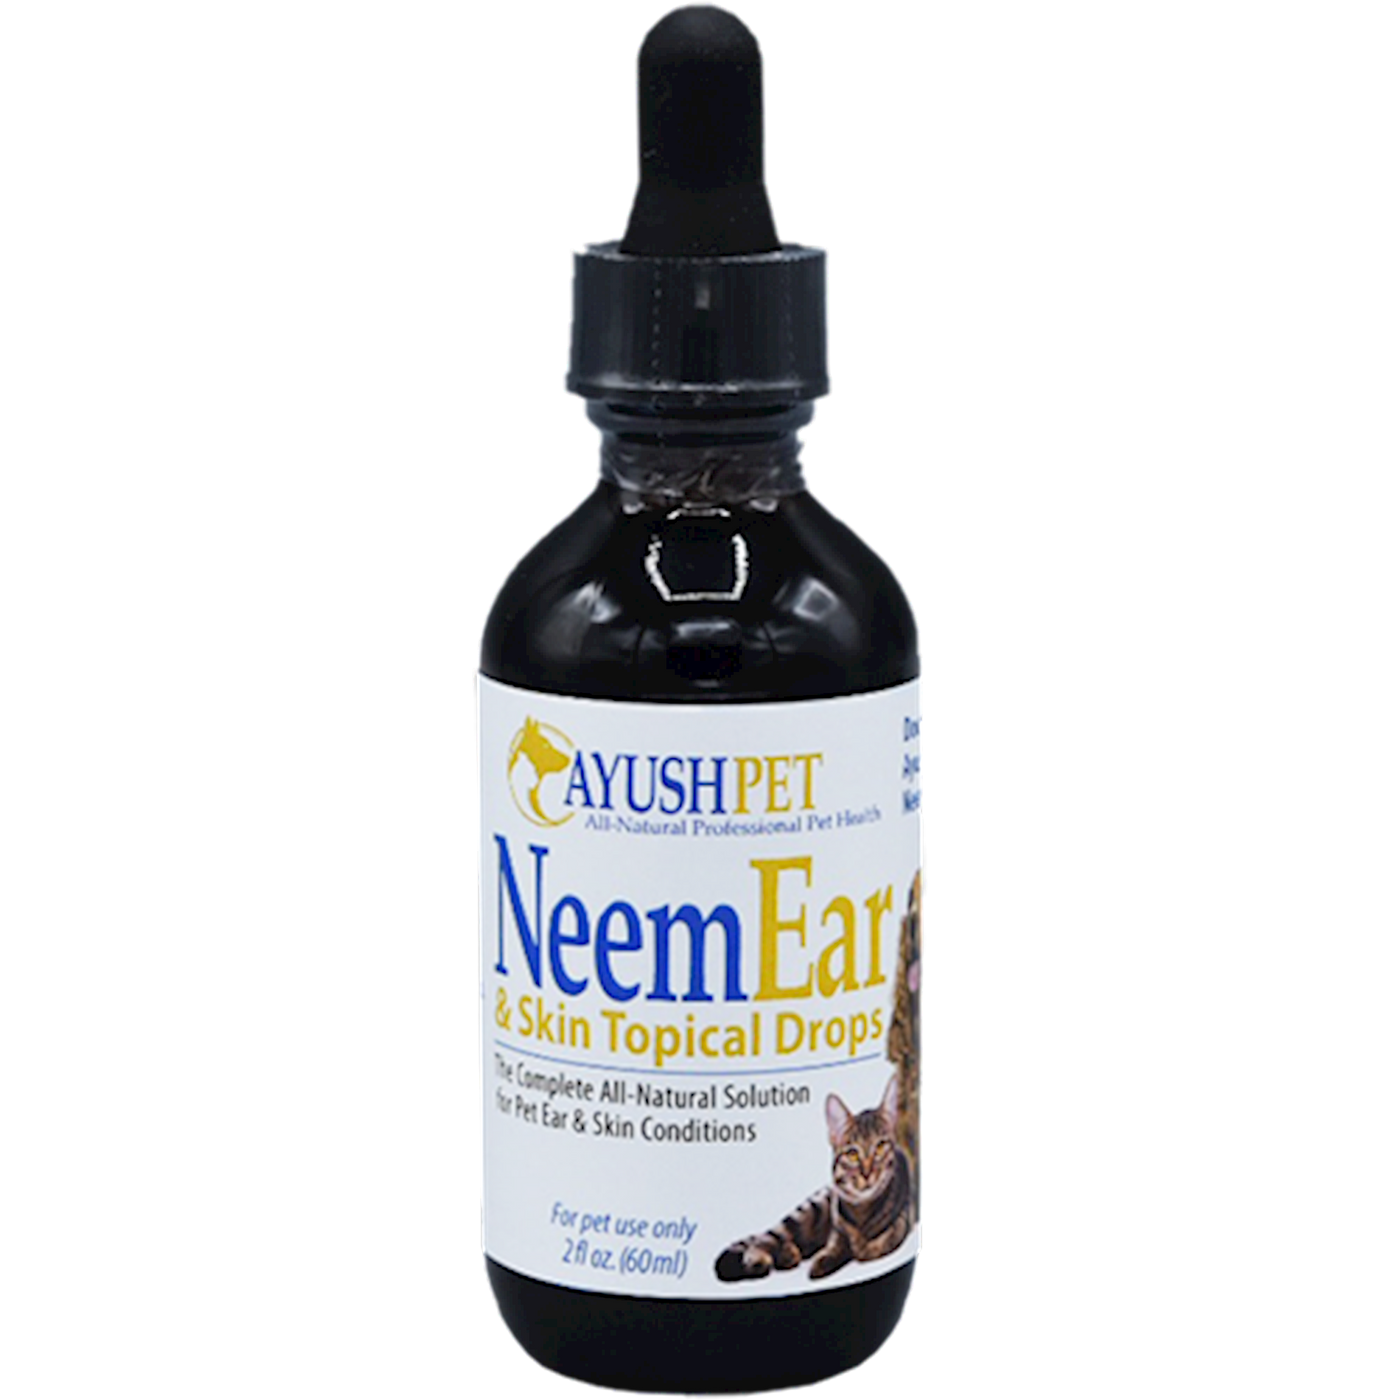 Pet Neem Ear & Skin Drops 2 fl oz Curated Wellness